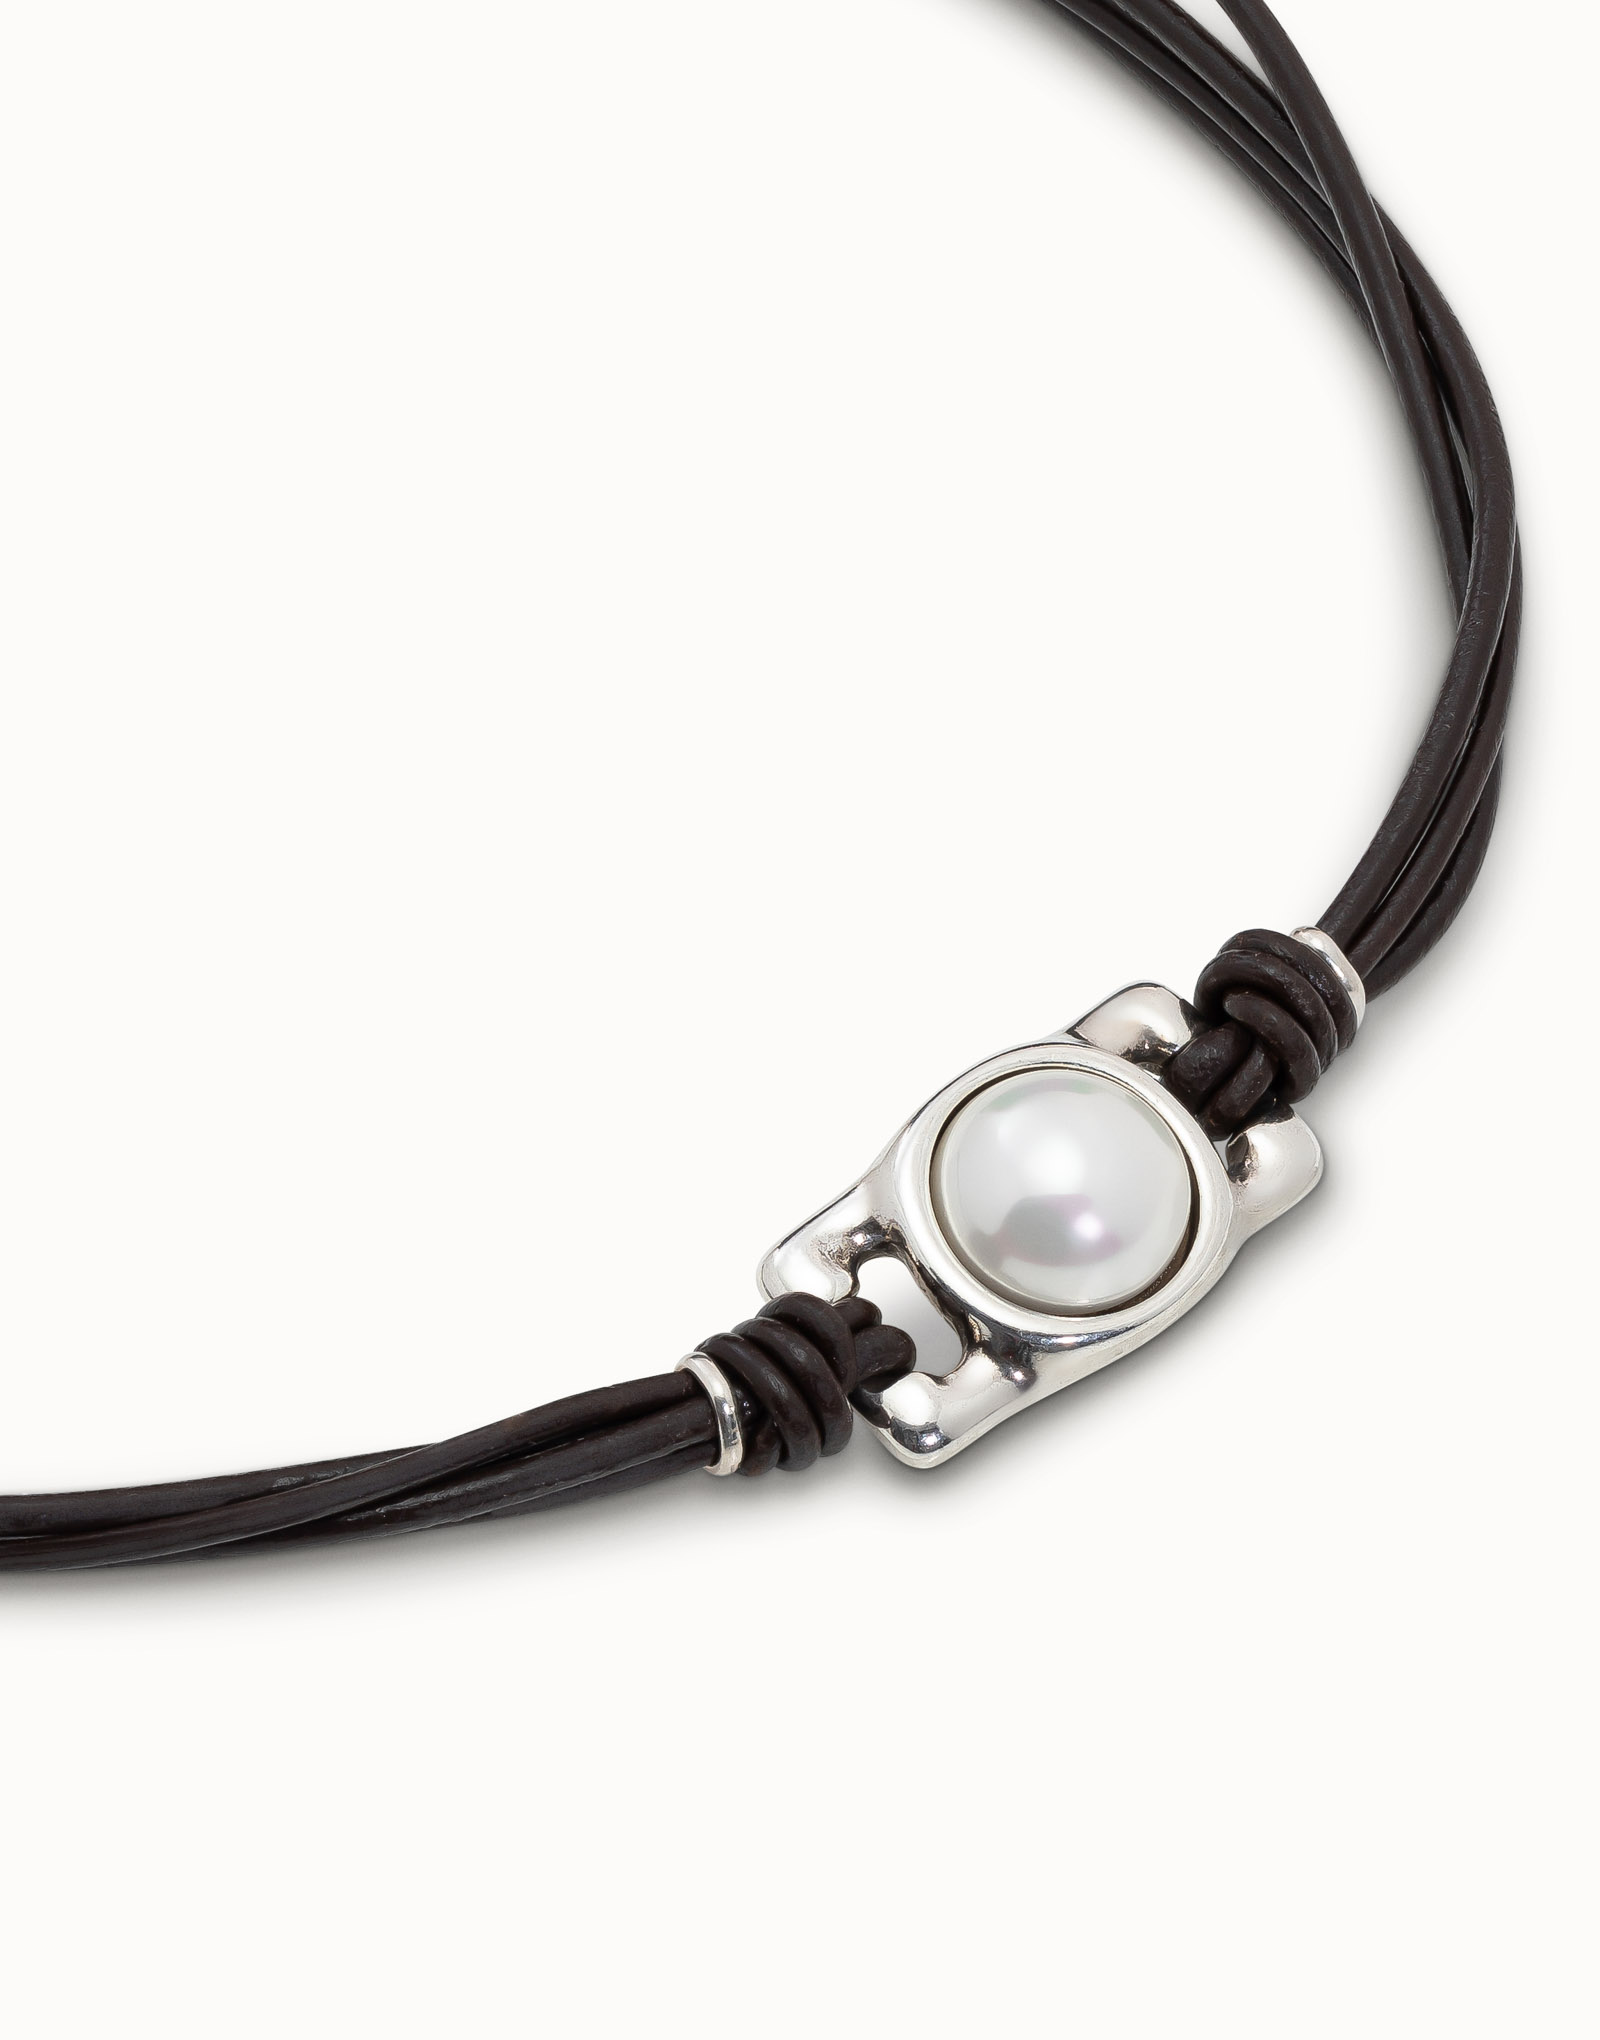 Collar corto de cuatro tiras de cuero y abalorio central con perla, Plateado, large image number null